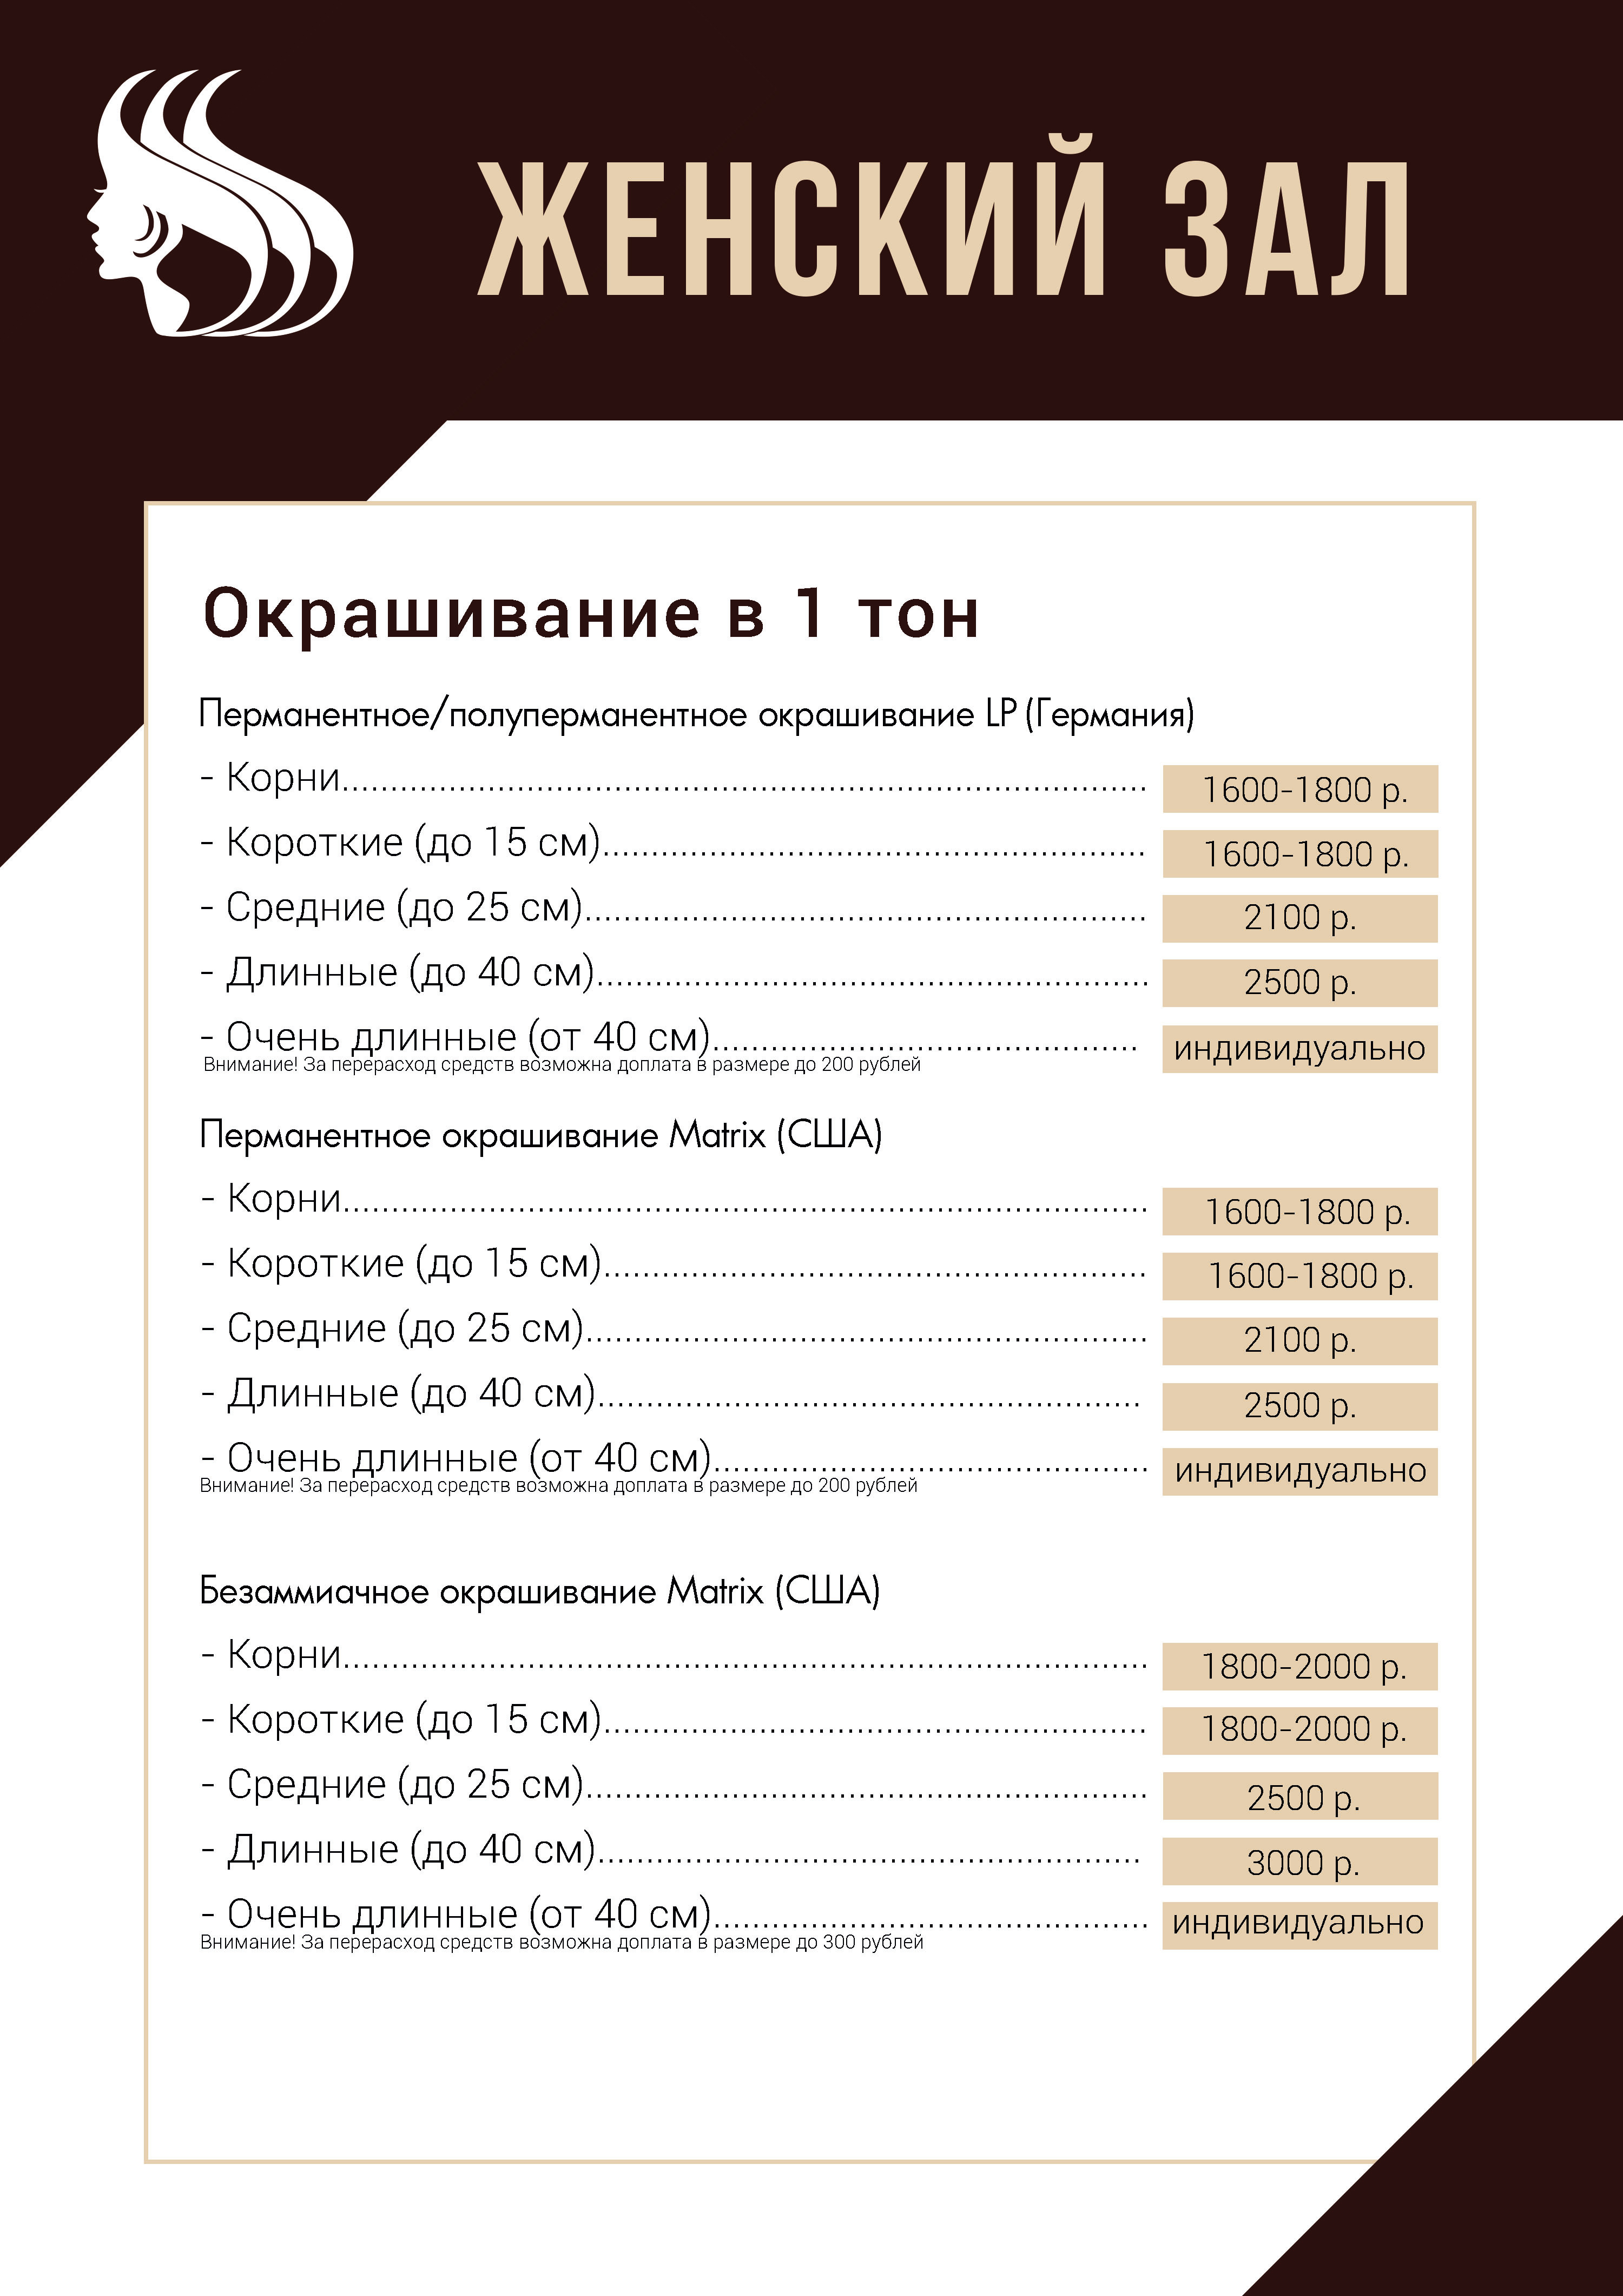 zhenskiy-zal-okrashivanie- 1 ton 2.jpg